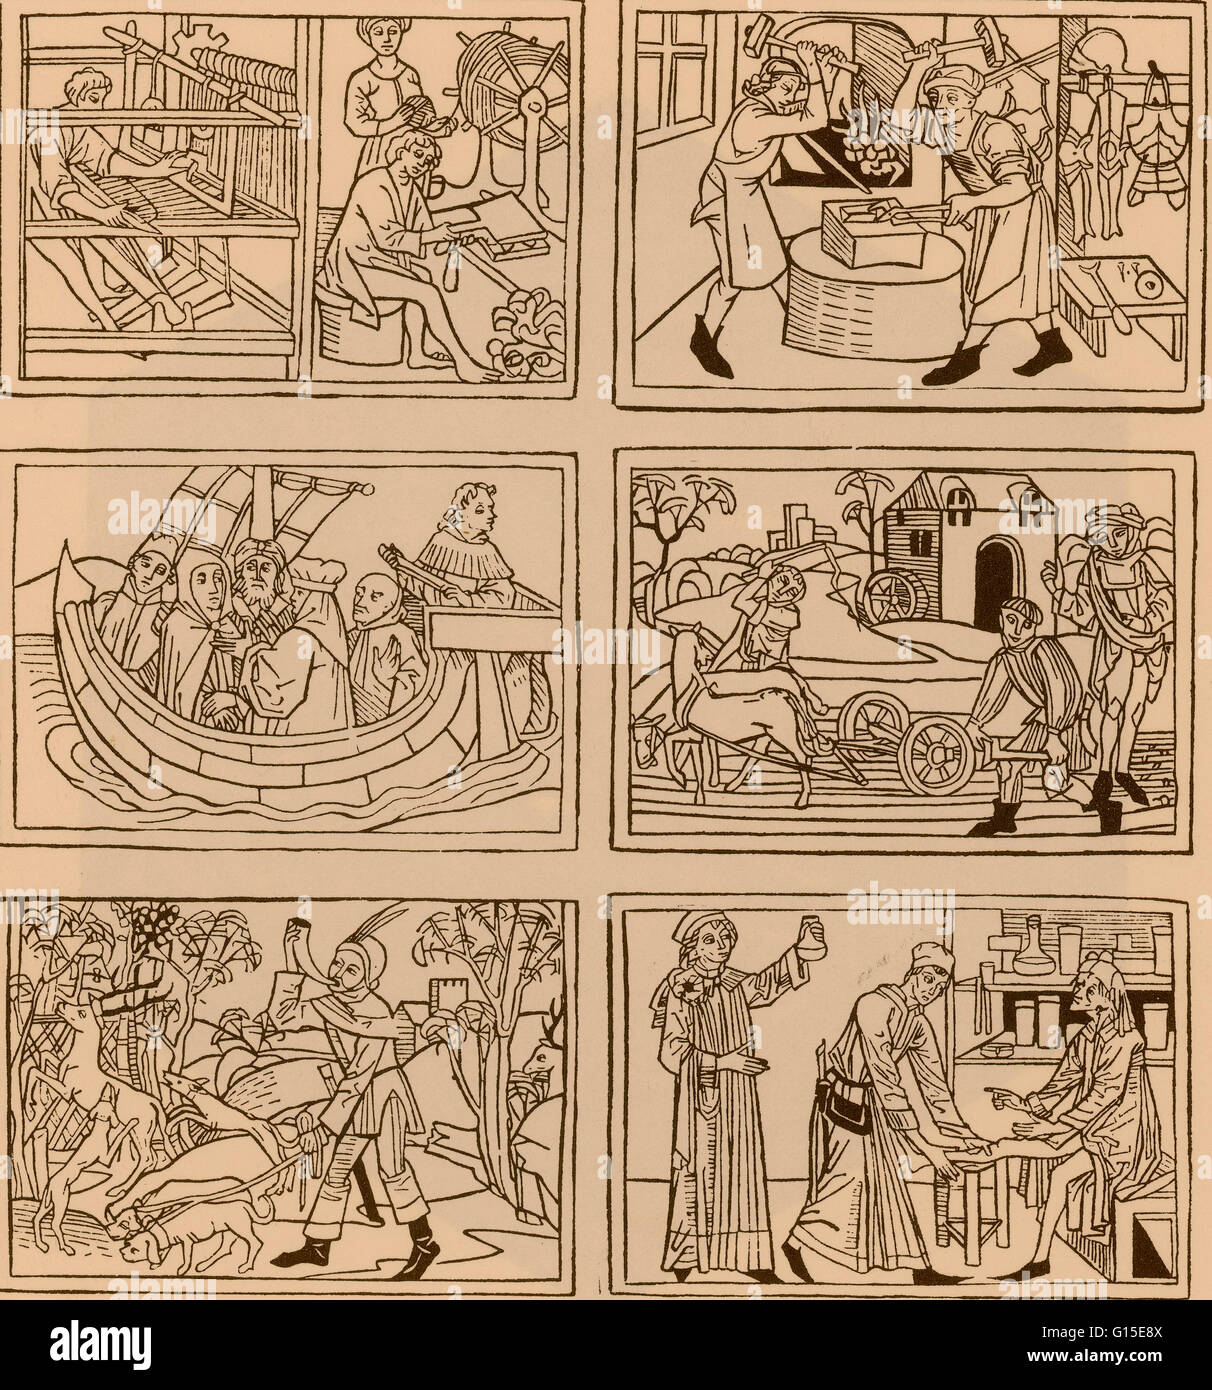 Sei arti meccaniche: tessile, Lavoro, metallurgici, navigazione, Agricoltura, caccia e medicina. c.1475 da Rodericus Zamorensis, Speculum Humanae Vitae. Foto Stock